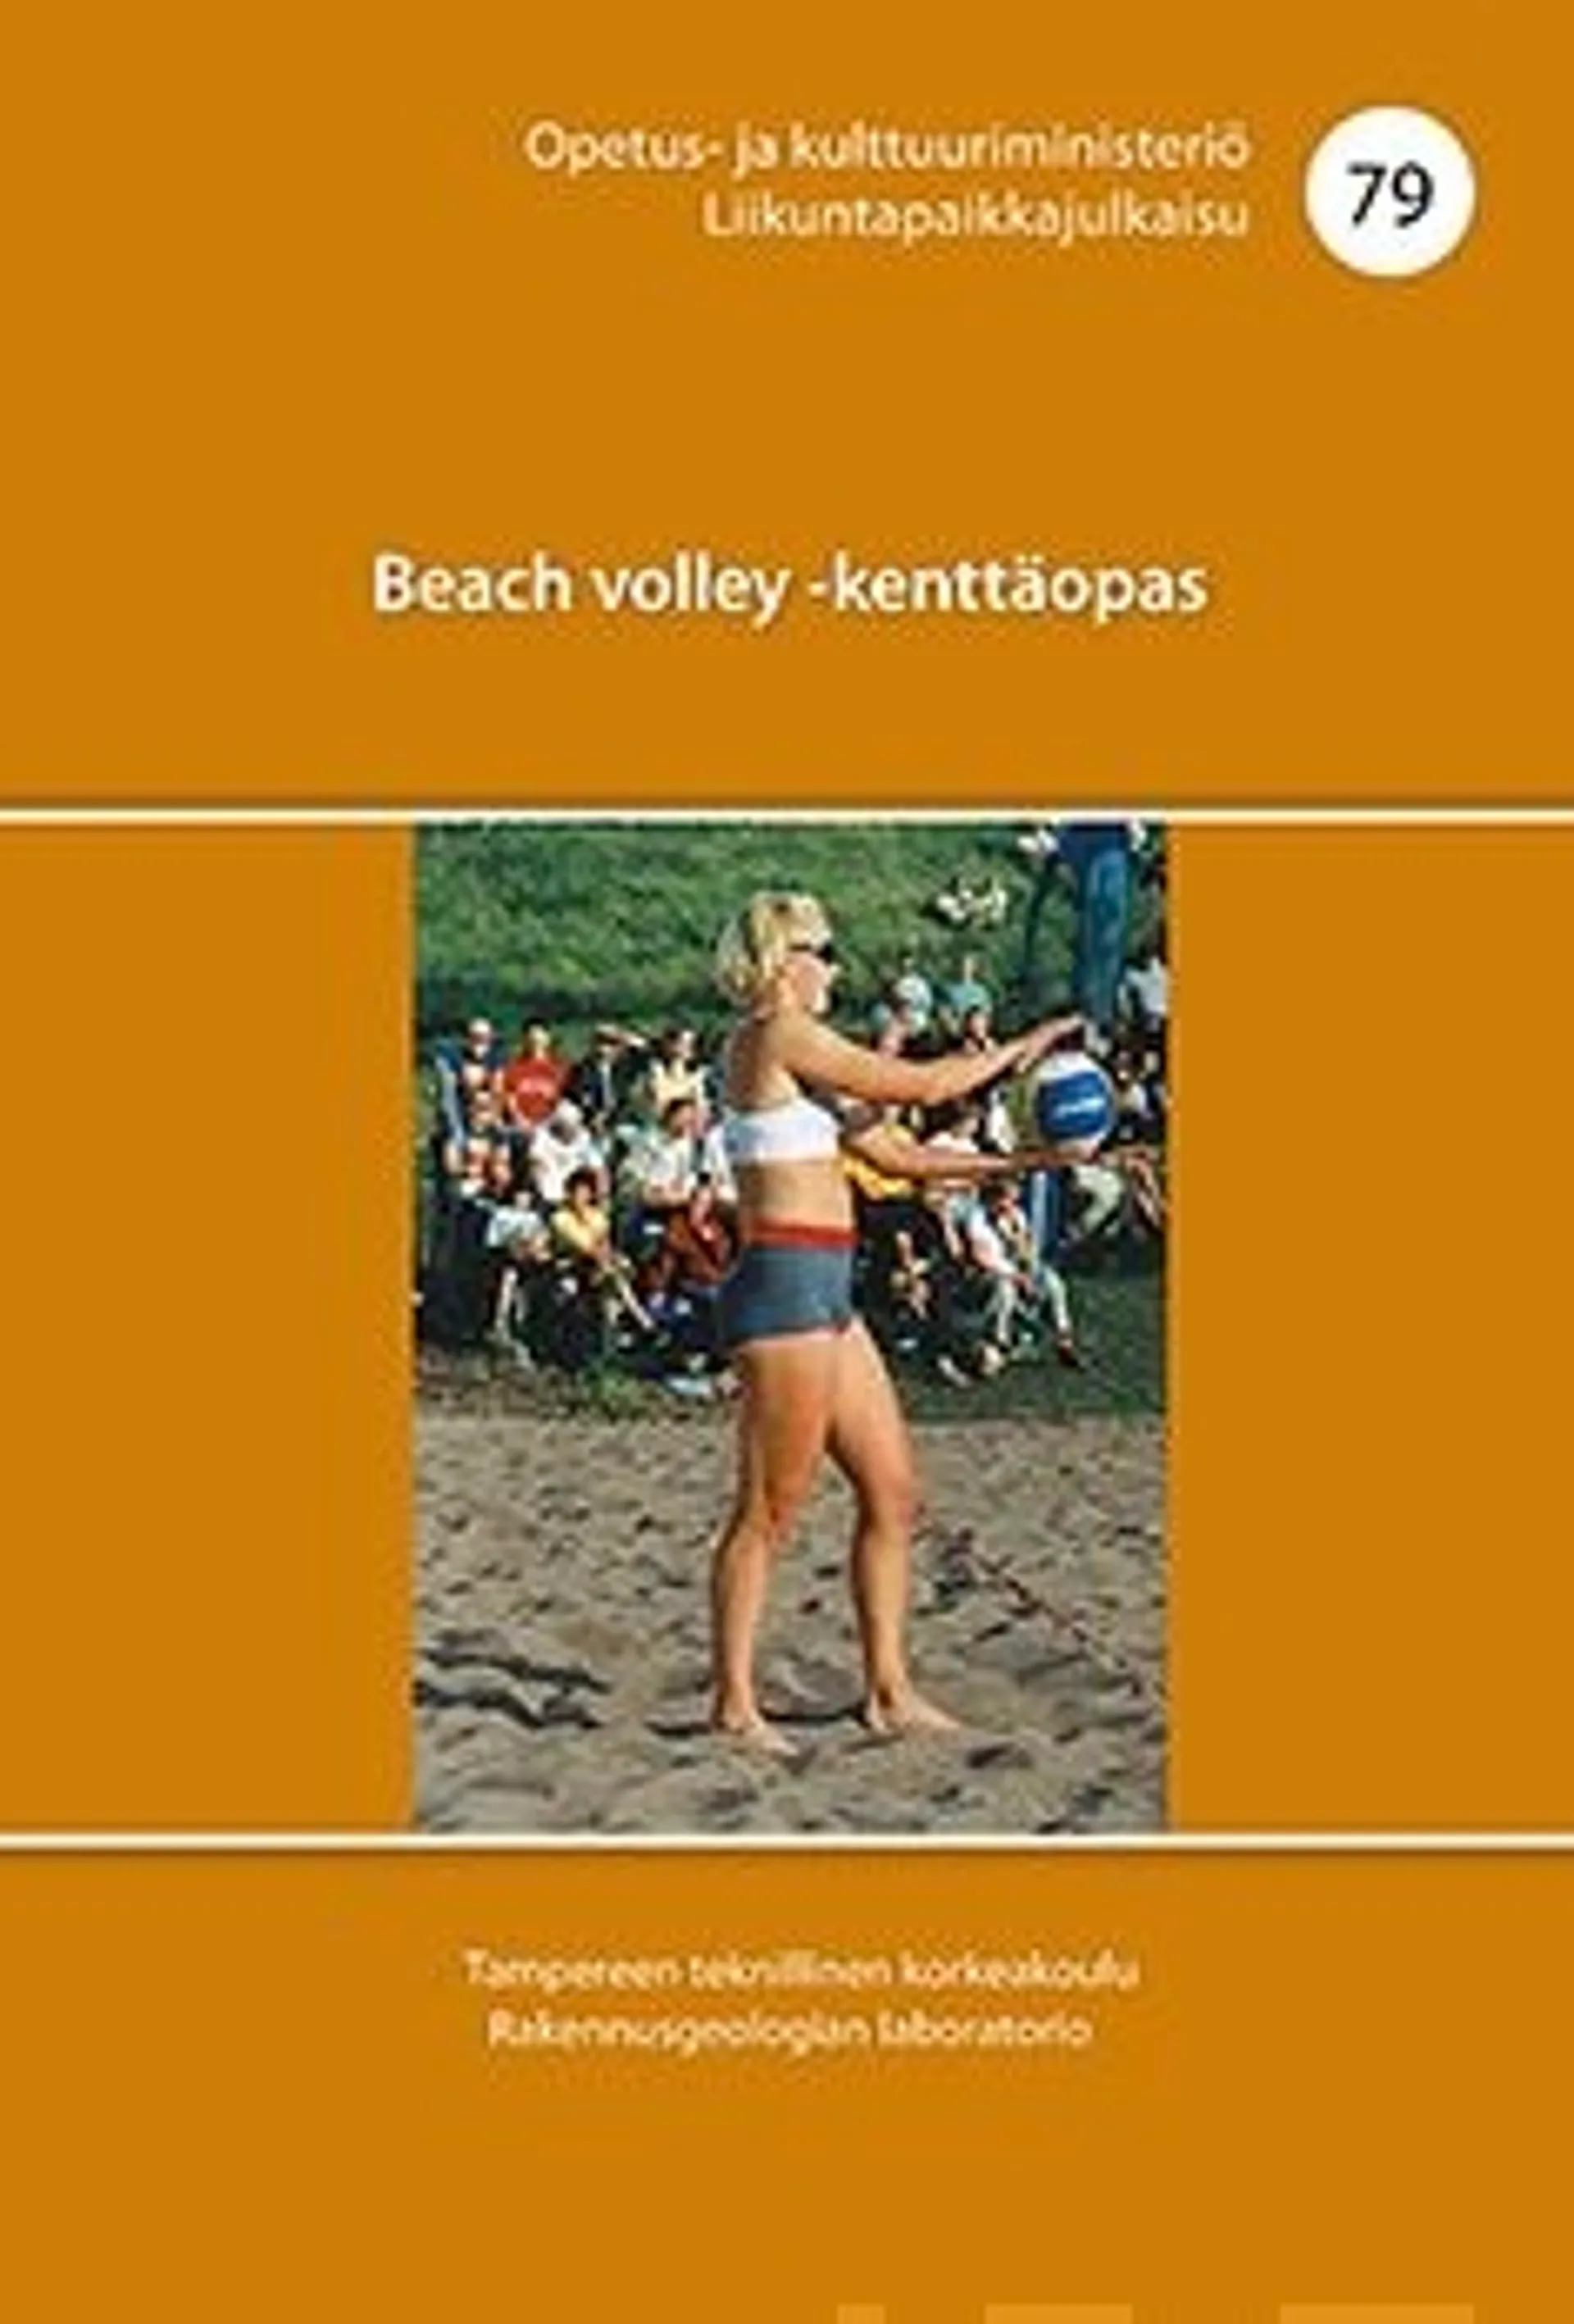 Jäniskangas, Beach volley -kenttäopas